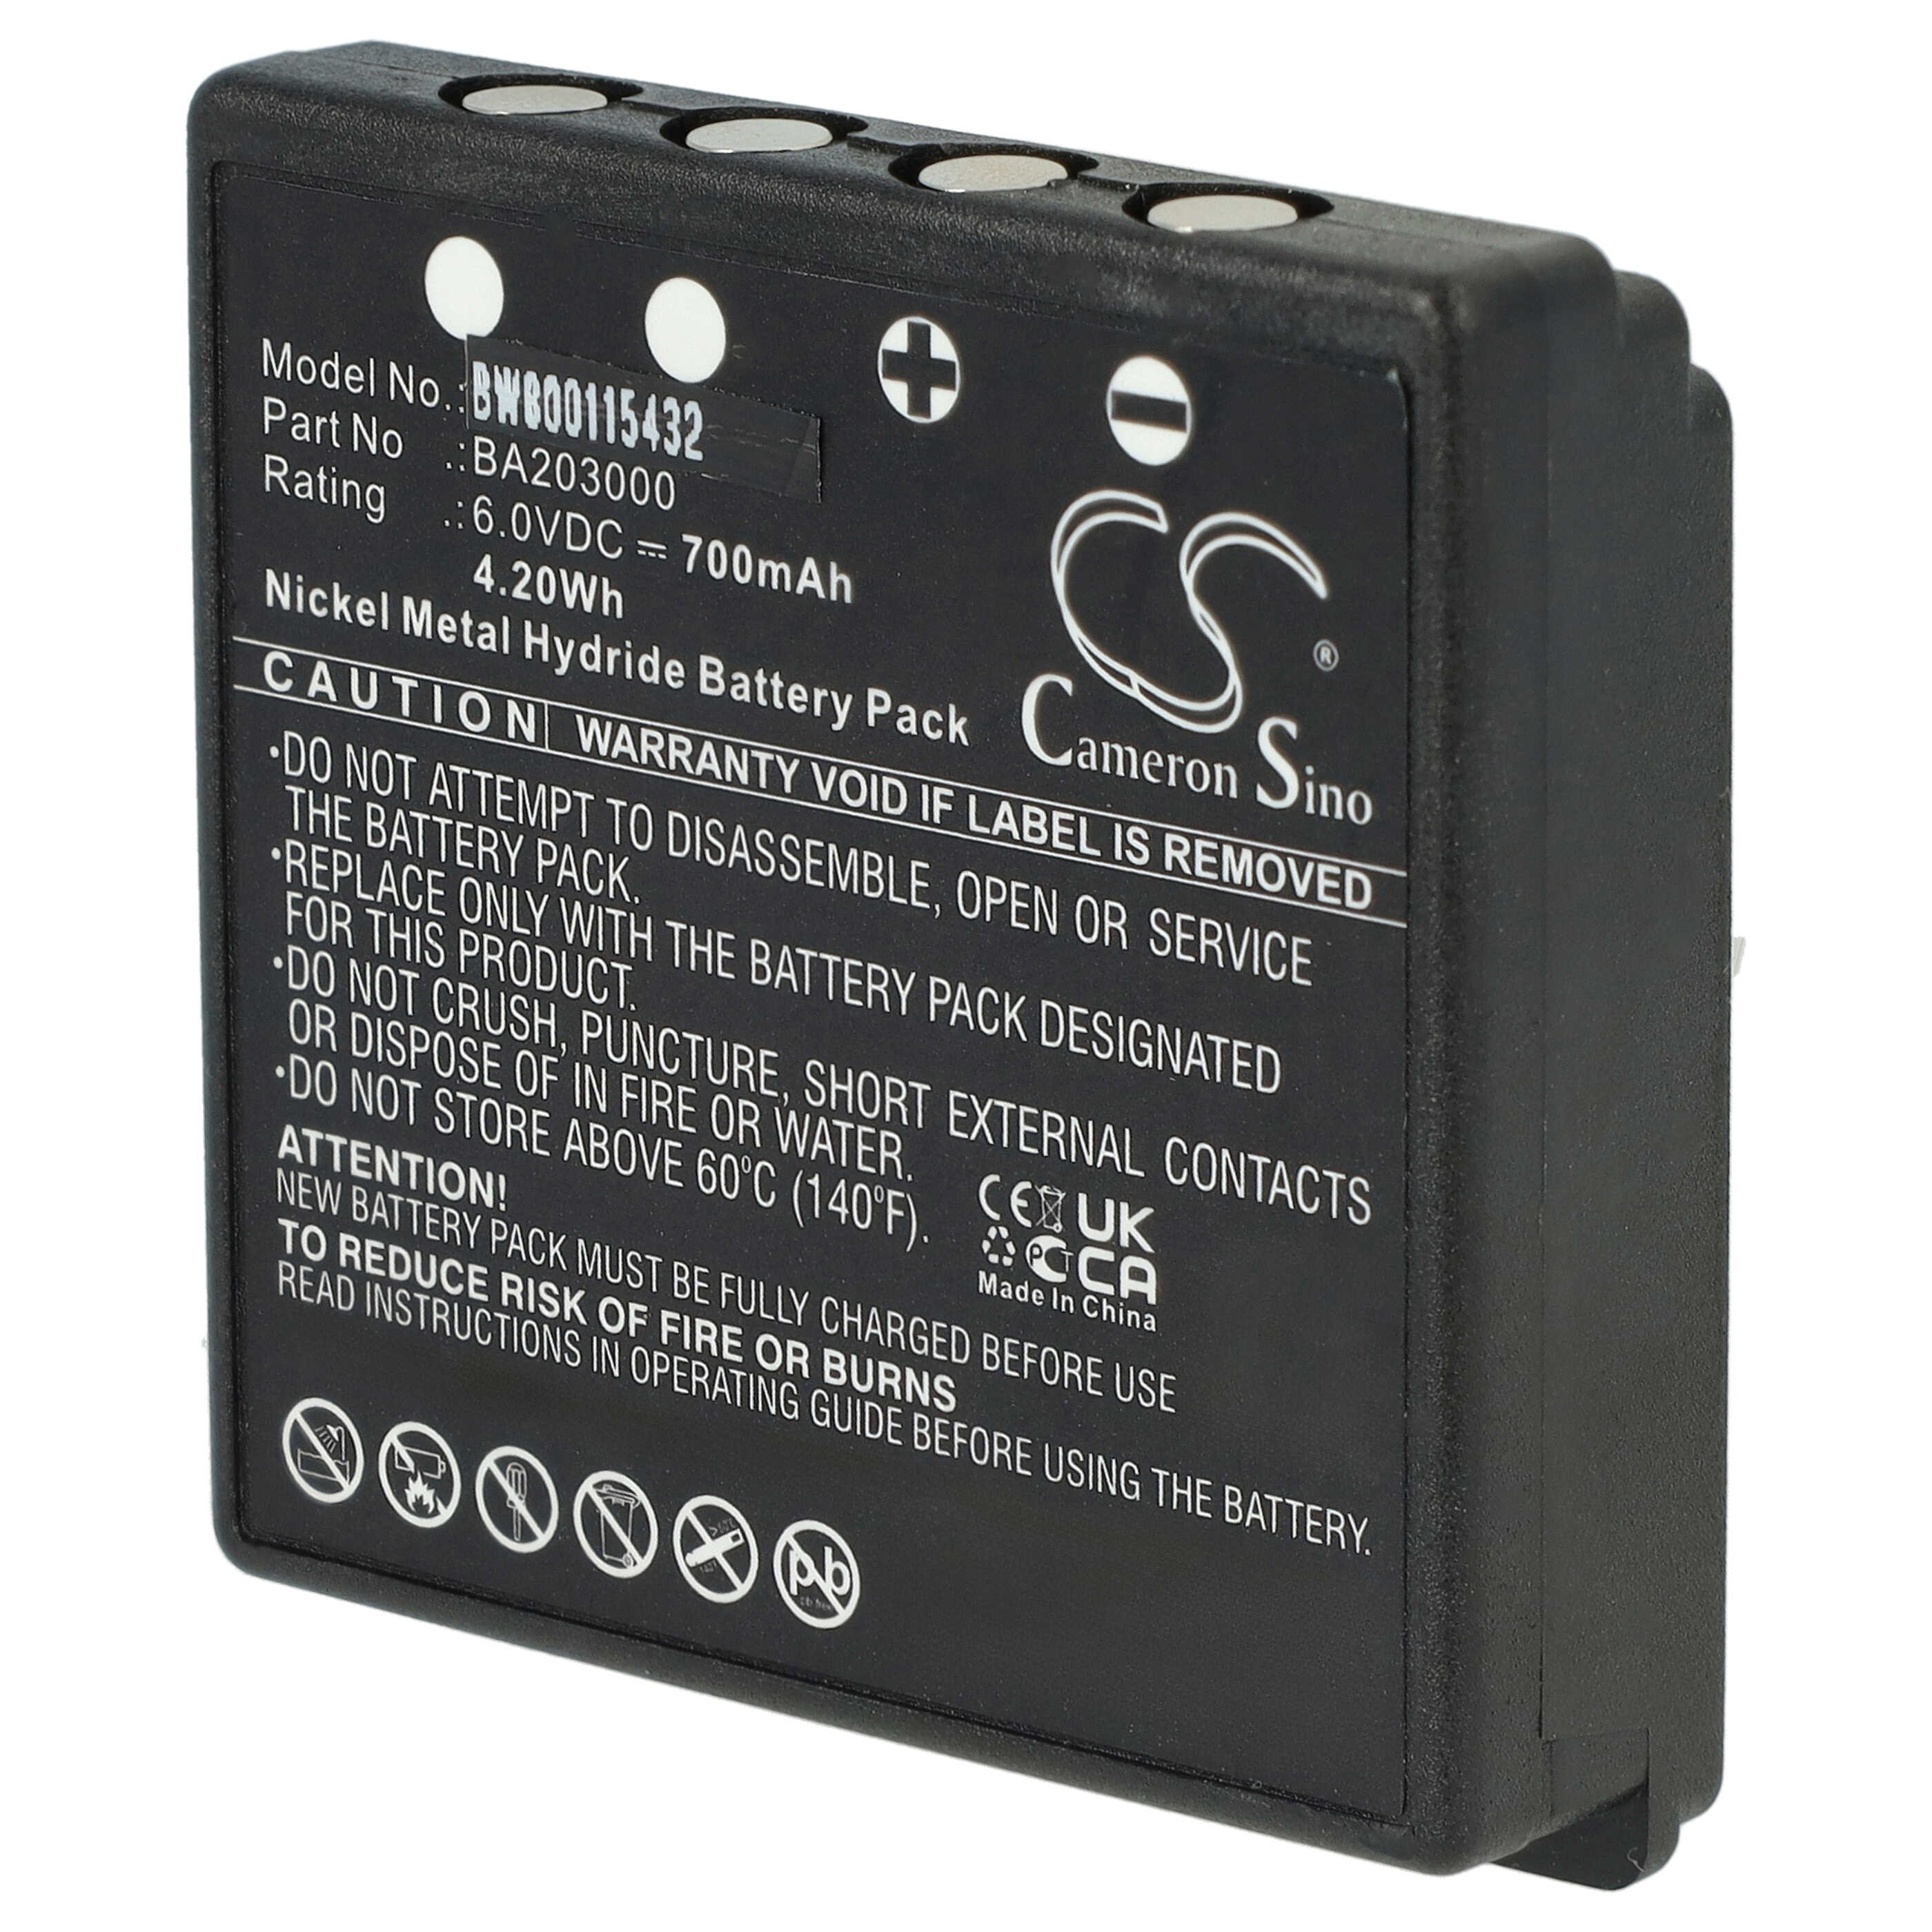 Batería reemplaza HBC BA203000, BA205030, 005-01-00615 para mando distancia industrial HBC - 700 mAh 6 V NiMH